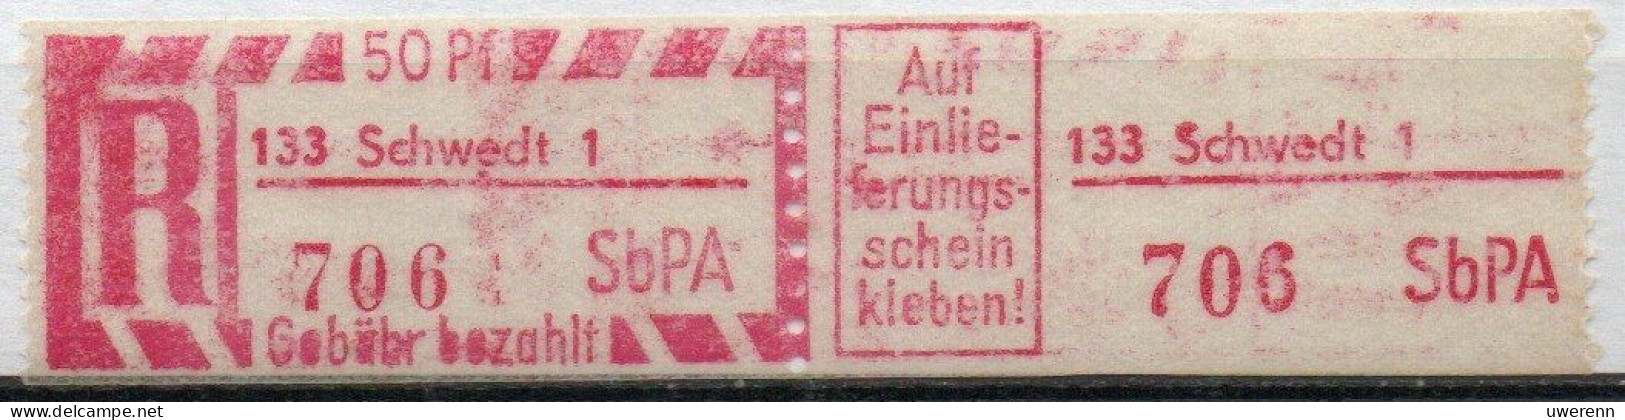 DDR Einschreibemarke Schwedt SbPA Postfrisch, EM2C-133-1 Zh - R-Zettel